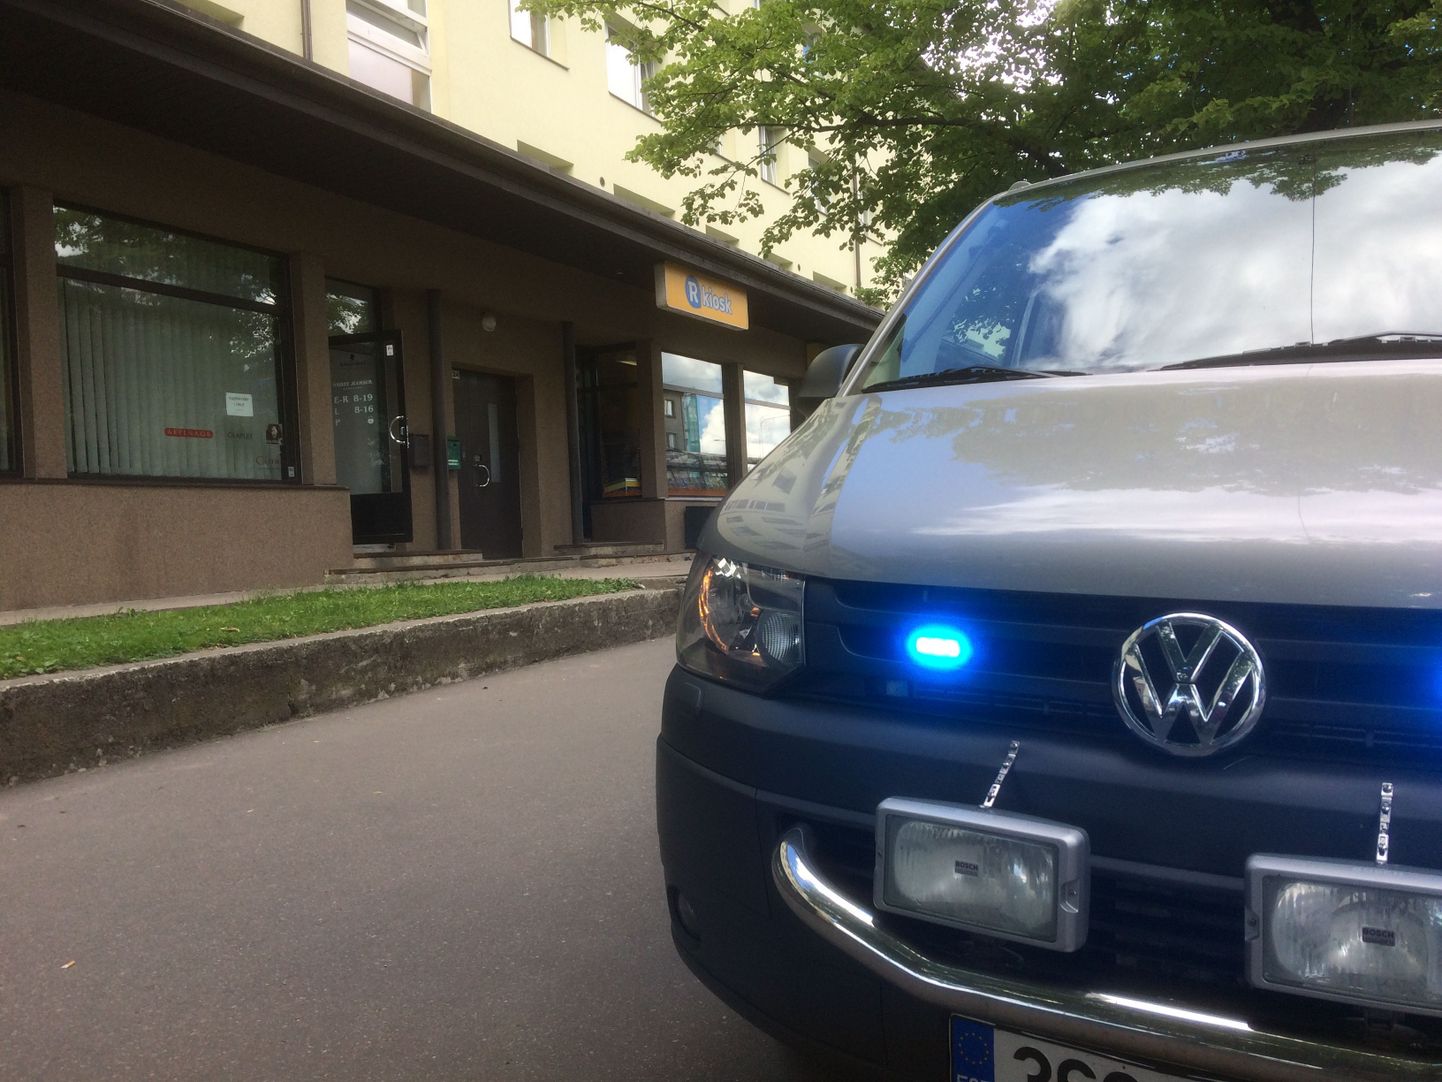 22. juunil kella 10 paiku teatati politseile, et Pärnu Tallinna maantee kioskisse sisenes kaks meest, kellest üks liikus kioski tagaruumi ja haaras avatud seifist kaasa koti 880 euroga.